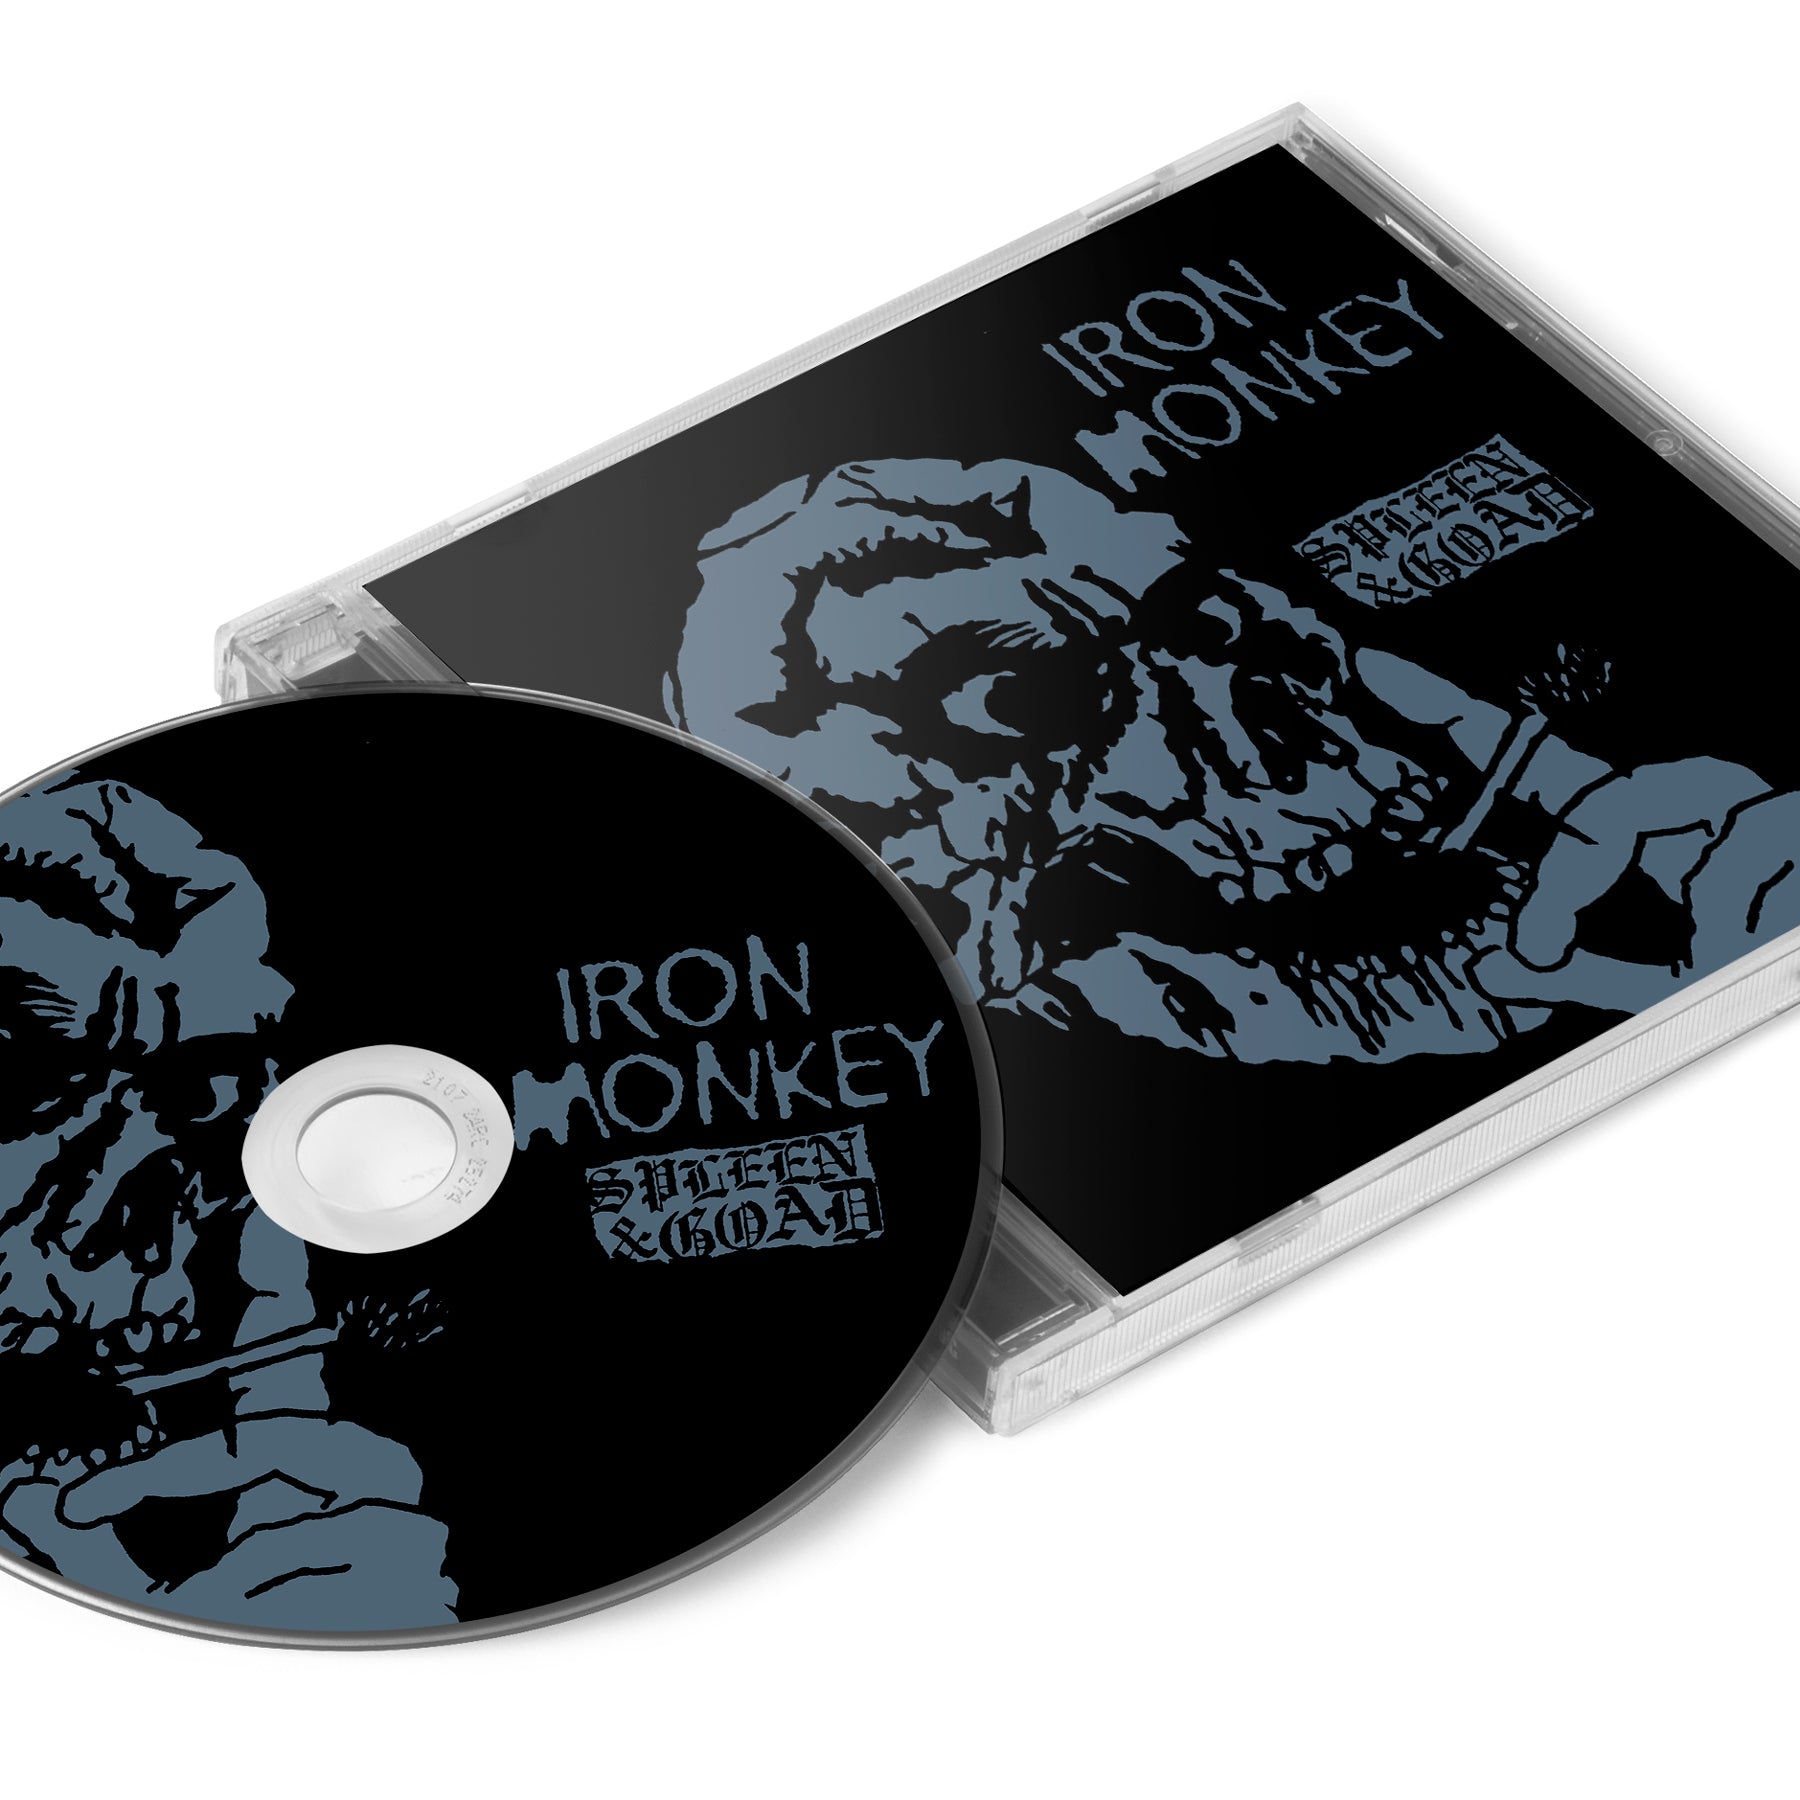 Iron Monkey "Spleen & Goad" CD